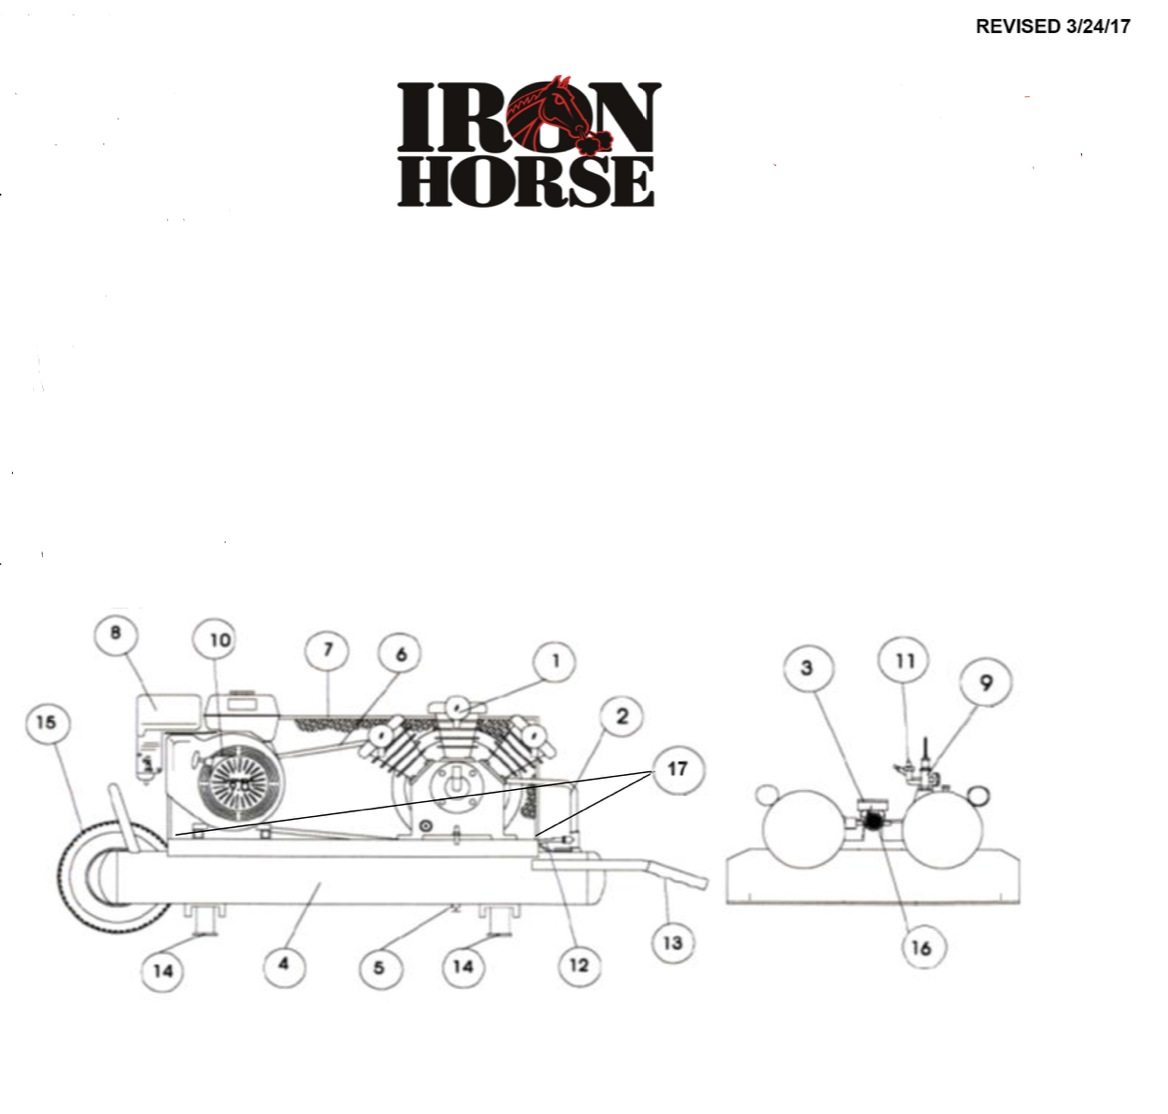 Iron Horse 6 Horse Power 10 Gallon Air Compressor Wheelbarrow-iron horse air compressors-Tool Mart Inc.